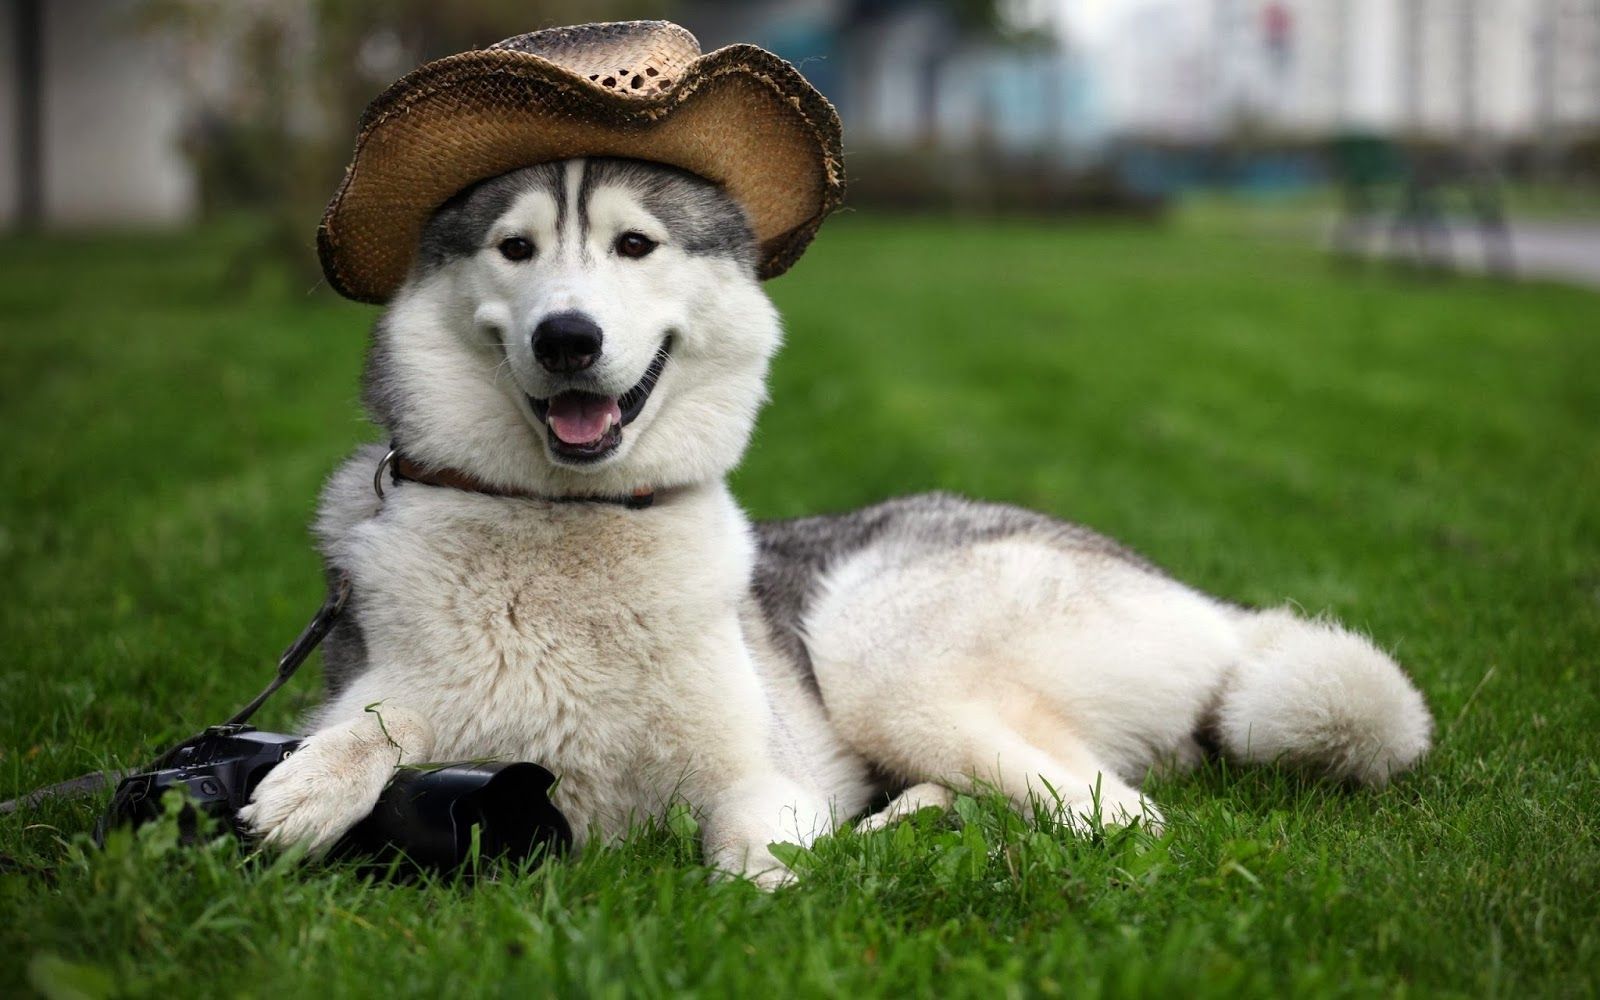 عکس سگ هاسگی بزرگ محبوب با کلاه بانمک روی سر